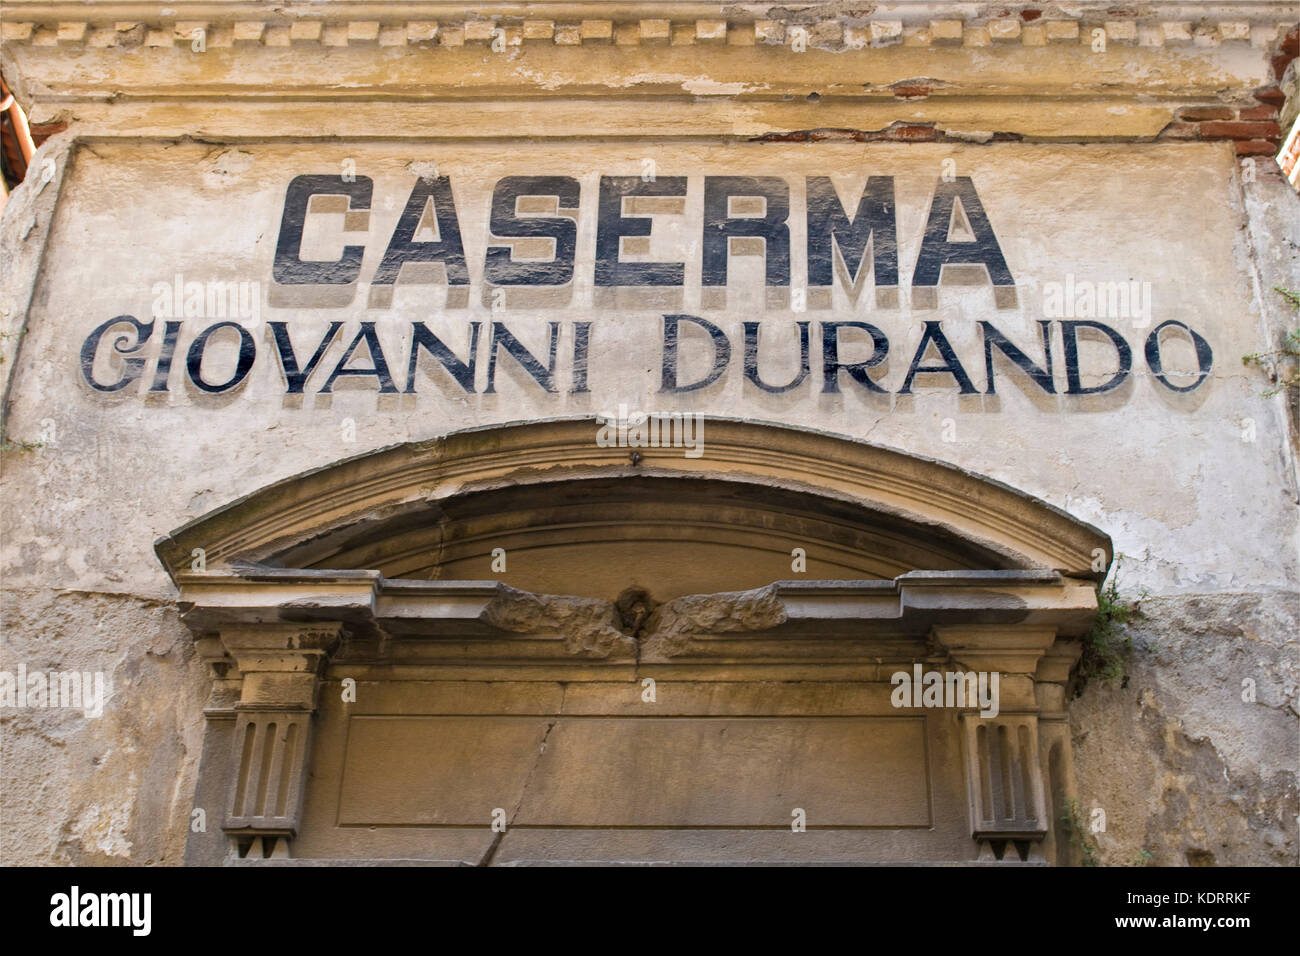 Casernes Giovanni Durando, Mondovì, province de Cuneo, Italie Banque D'Images